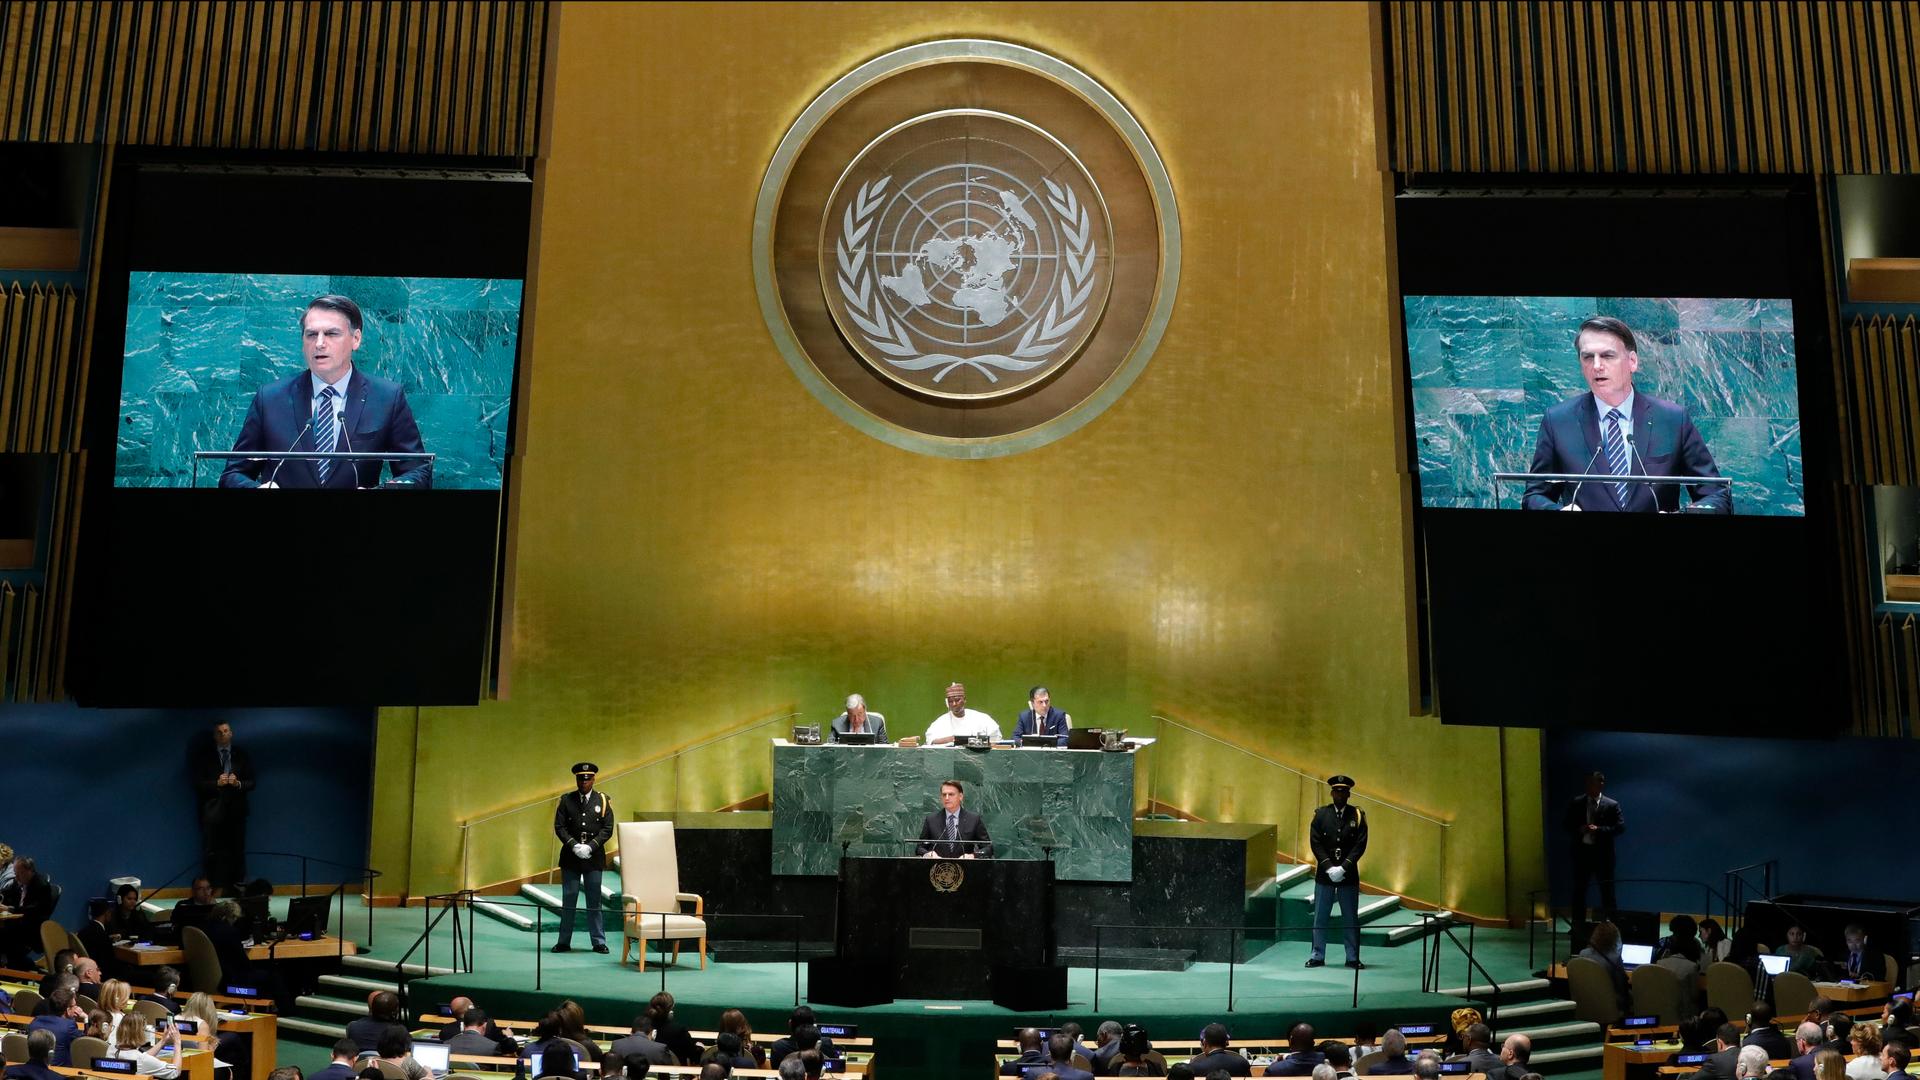 A man at a podium under the UN symbol